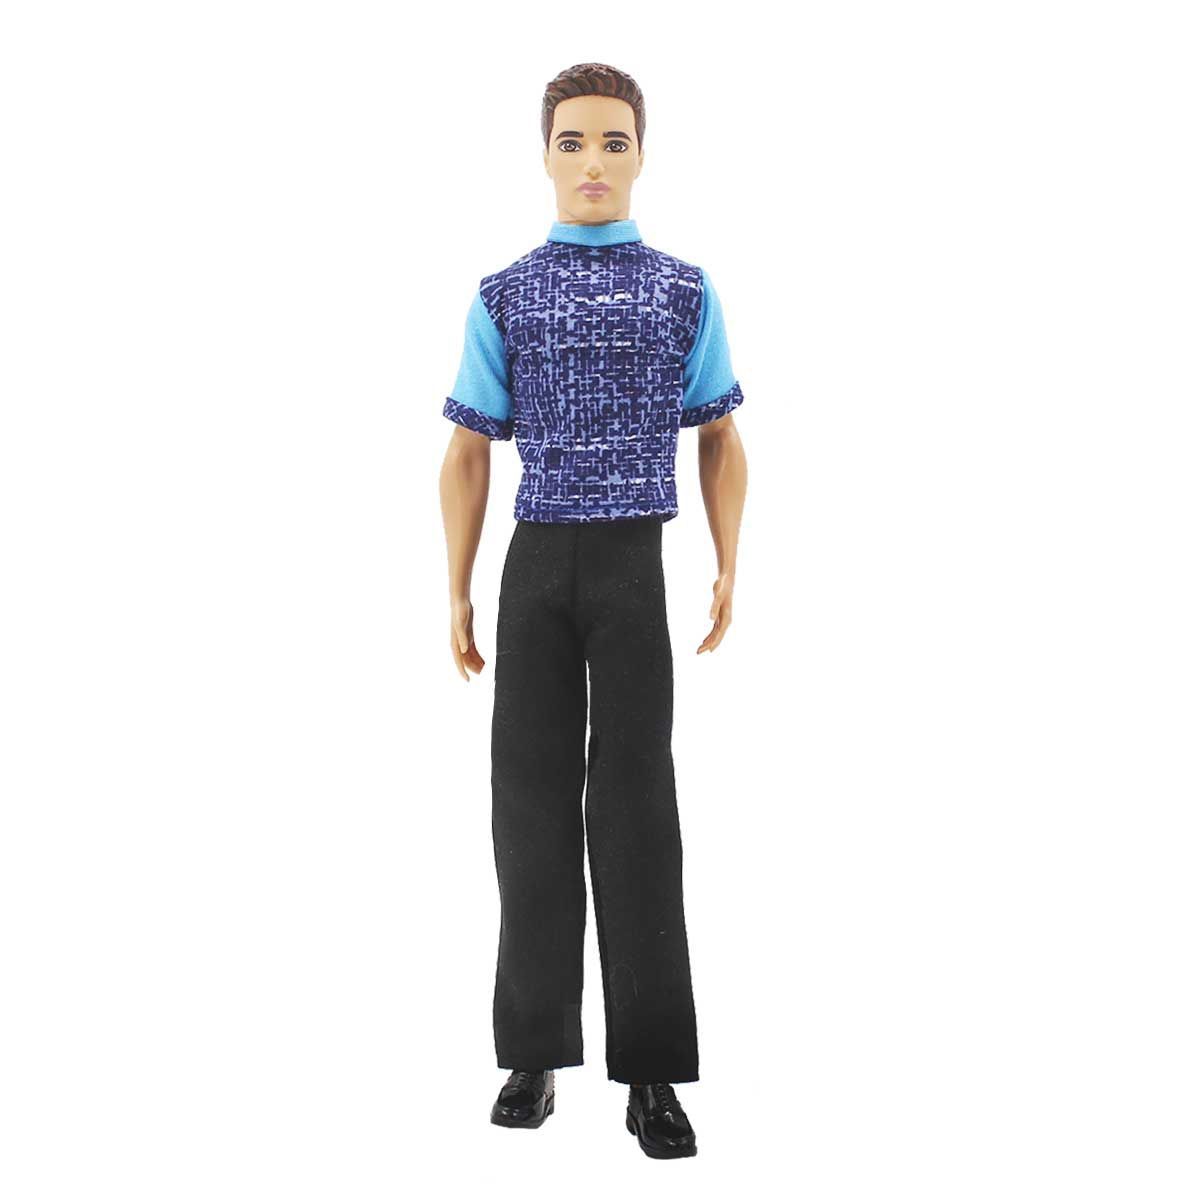 Одежда Dolls Accessories для Кена и кукол мальчиков 30 см Ритм города